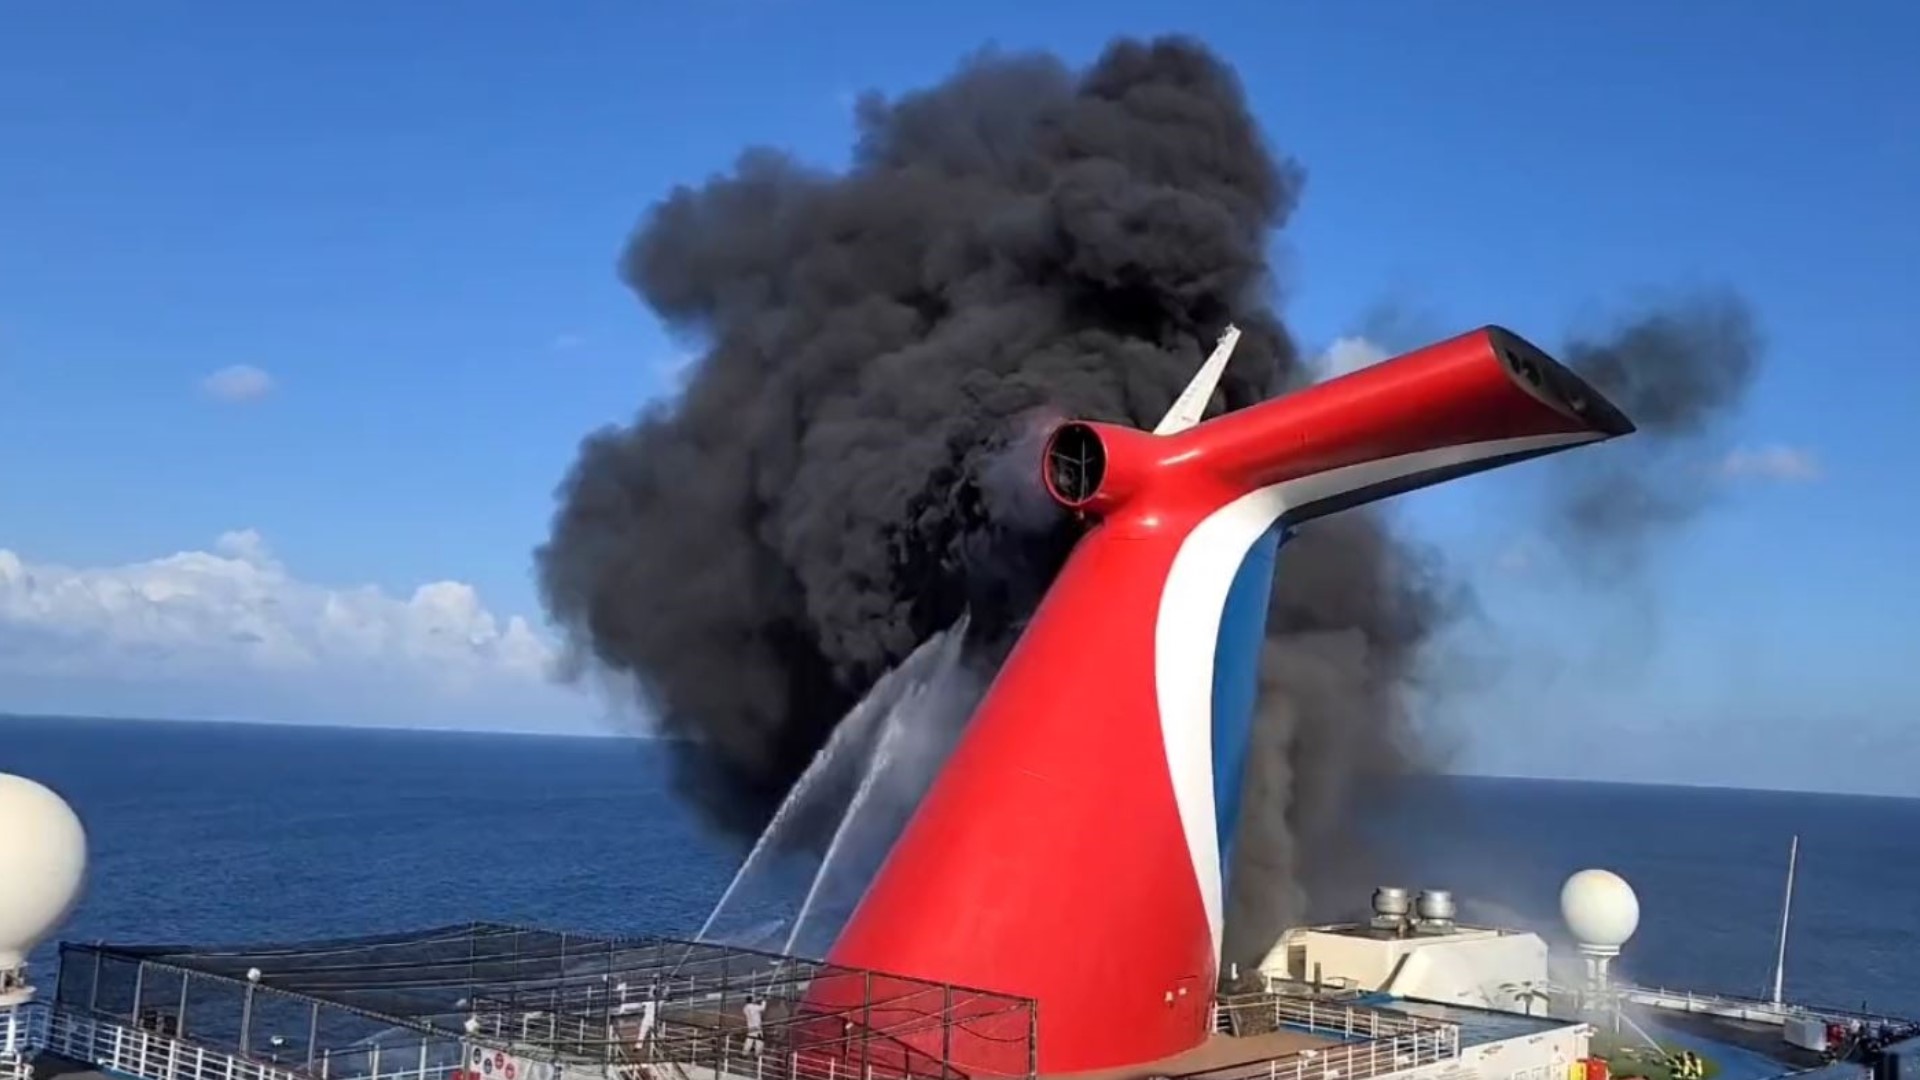 carnival cruise ship fire